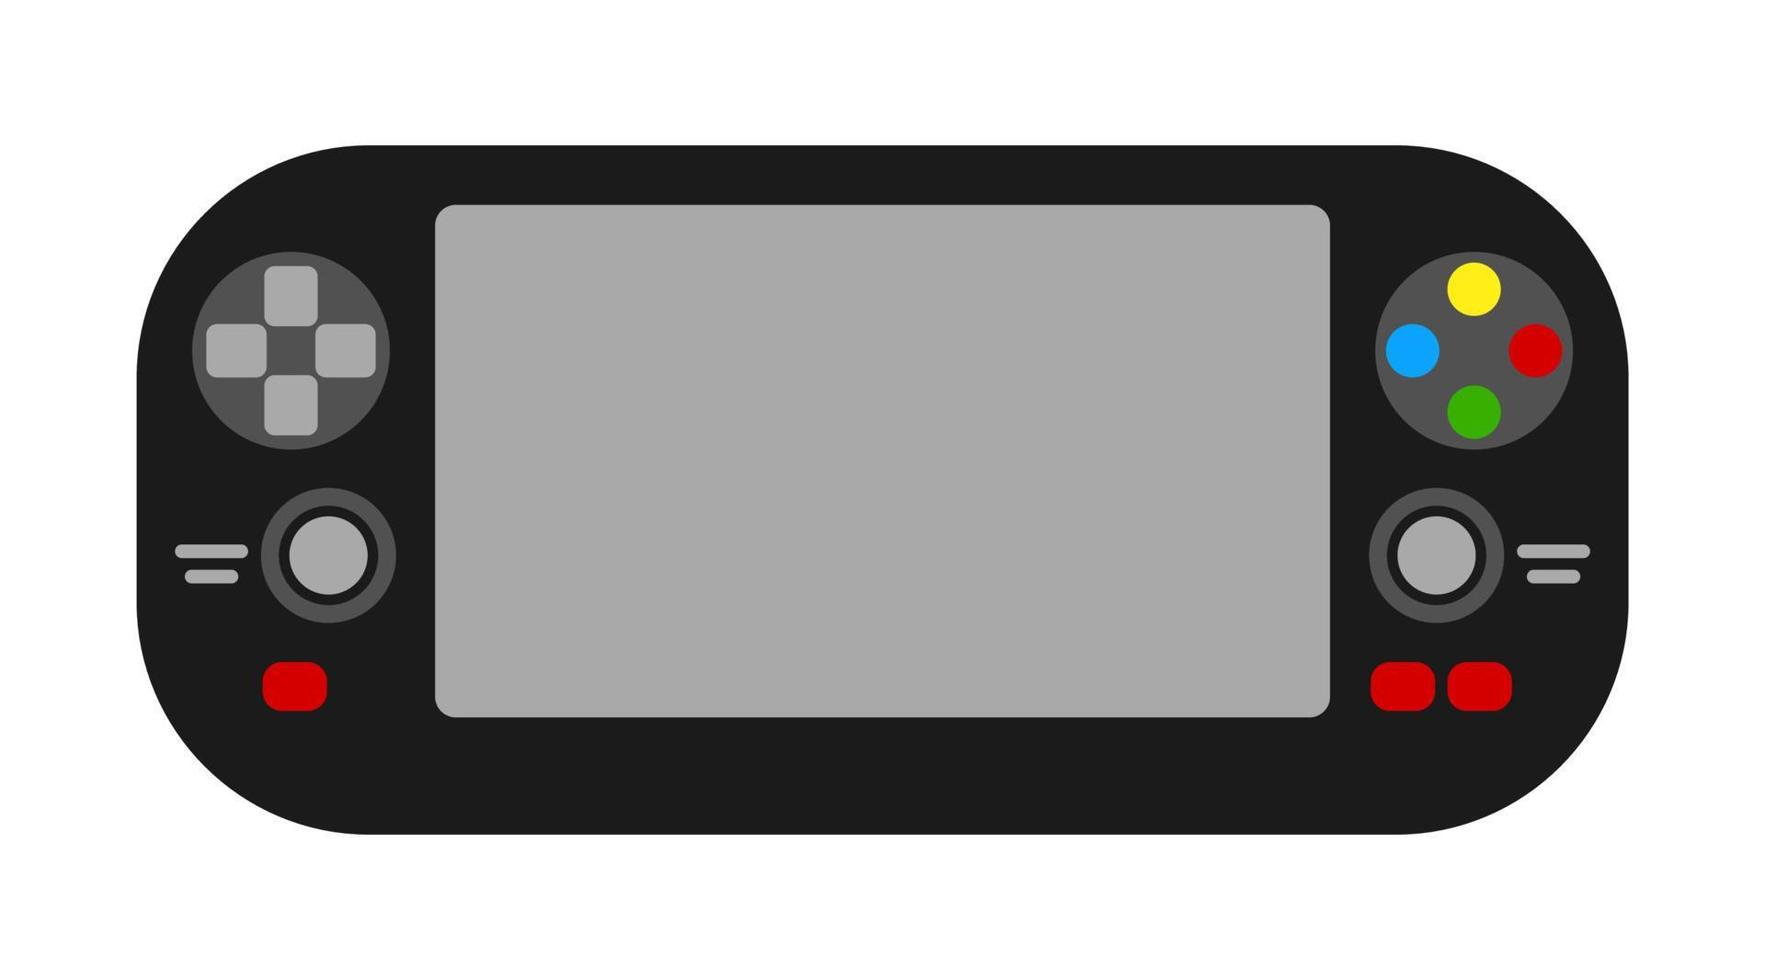 console di gioco portatile con schermo piatto. vettore isolato controller per videogiochi su sfondo bianco